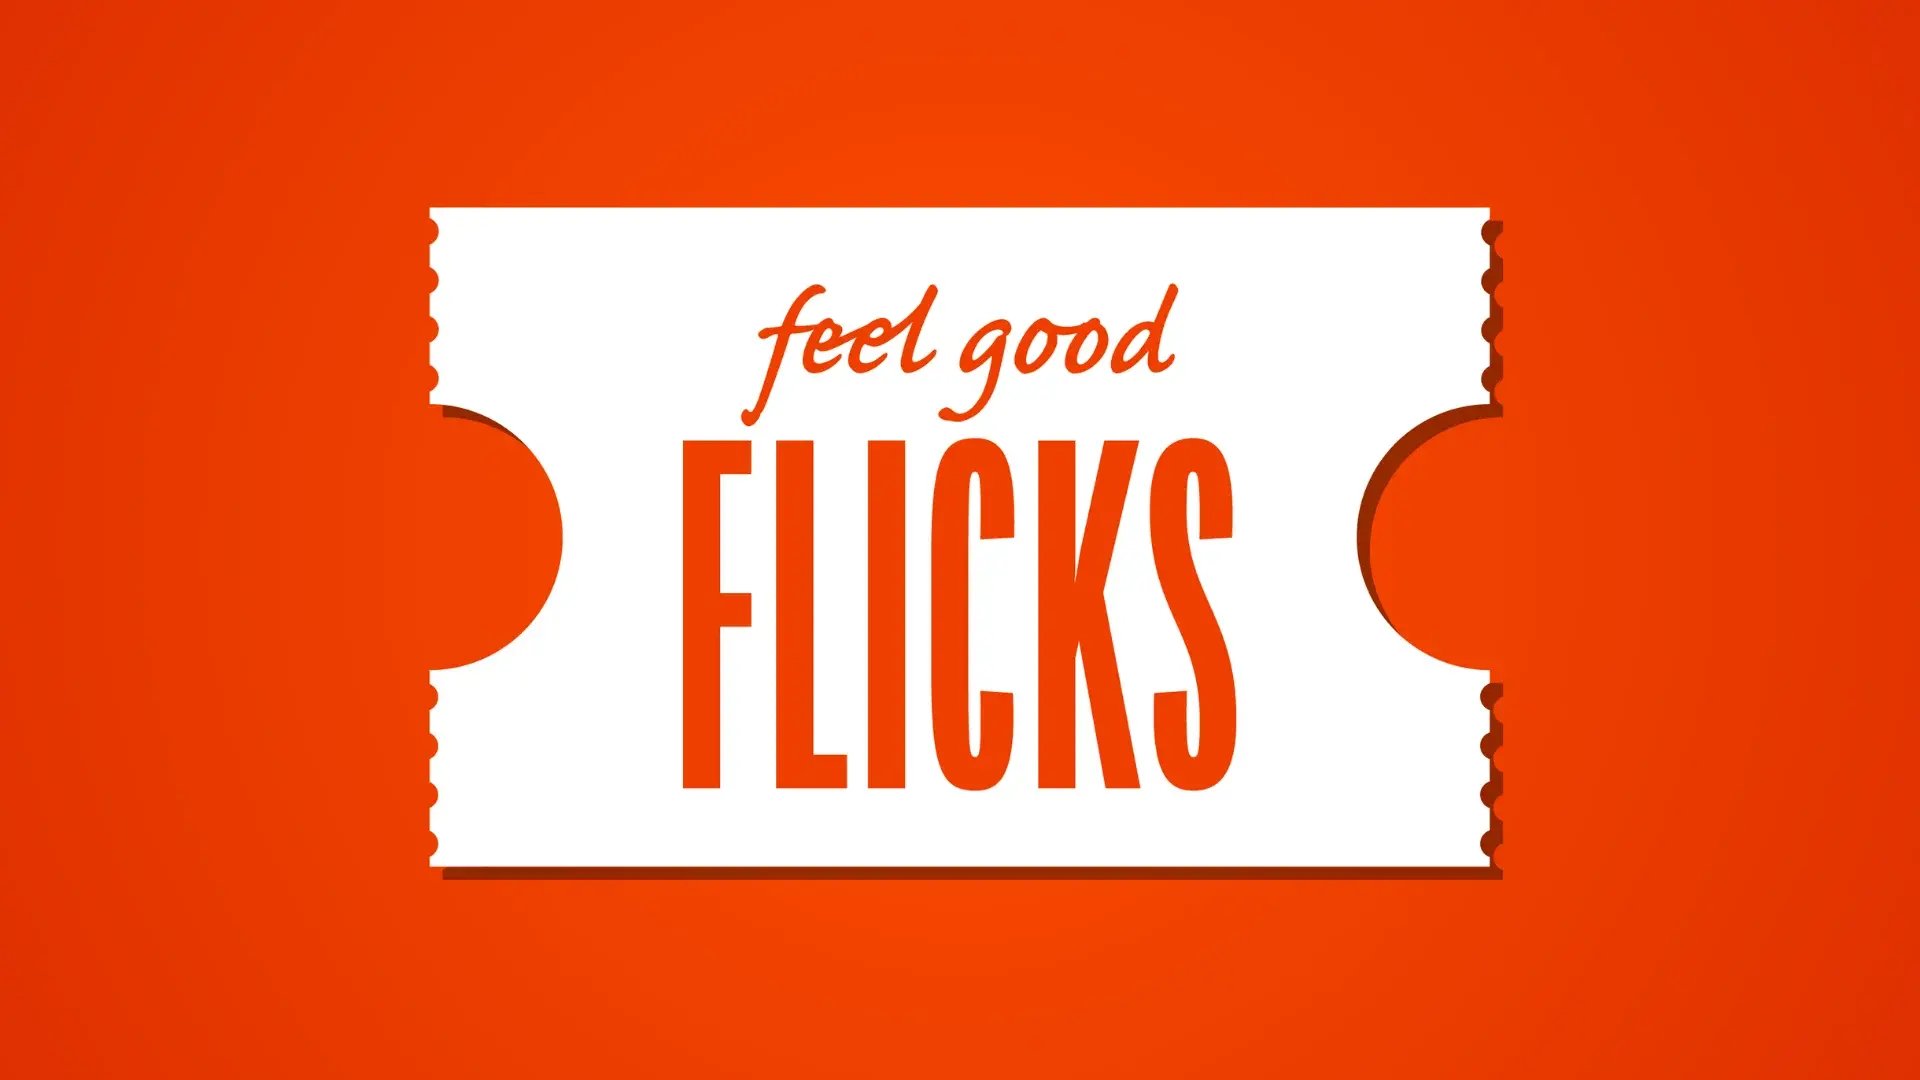 feel good flicks-1